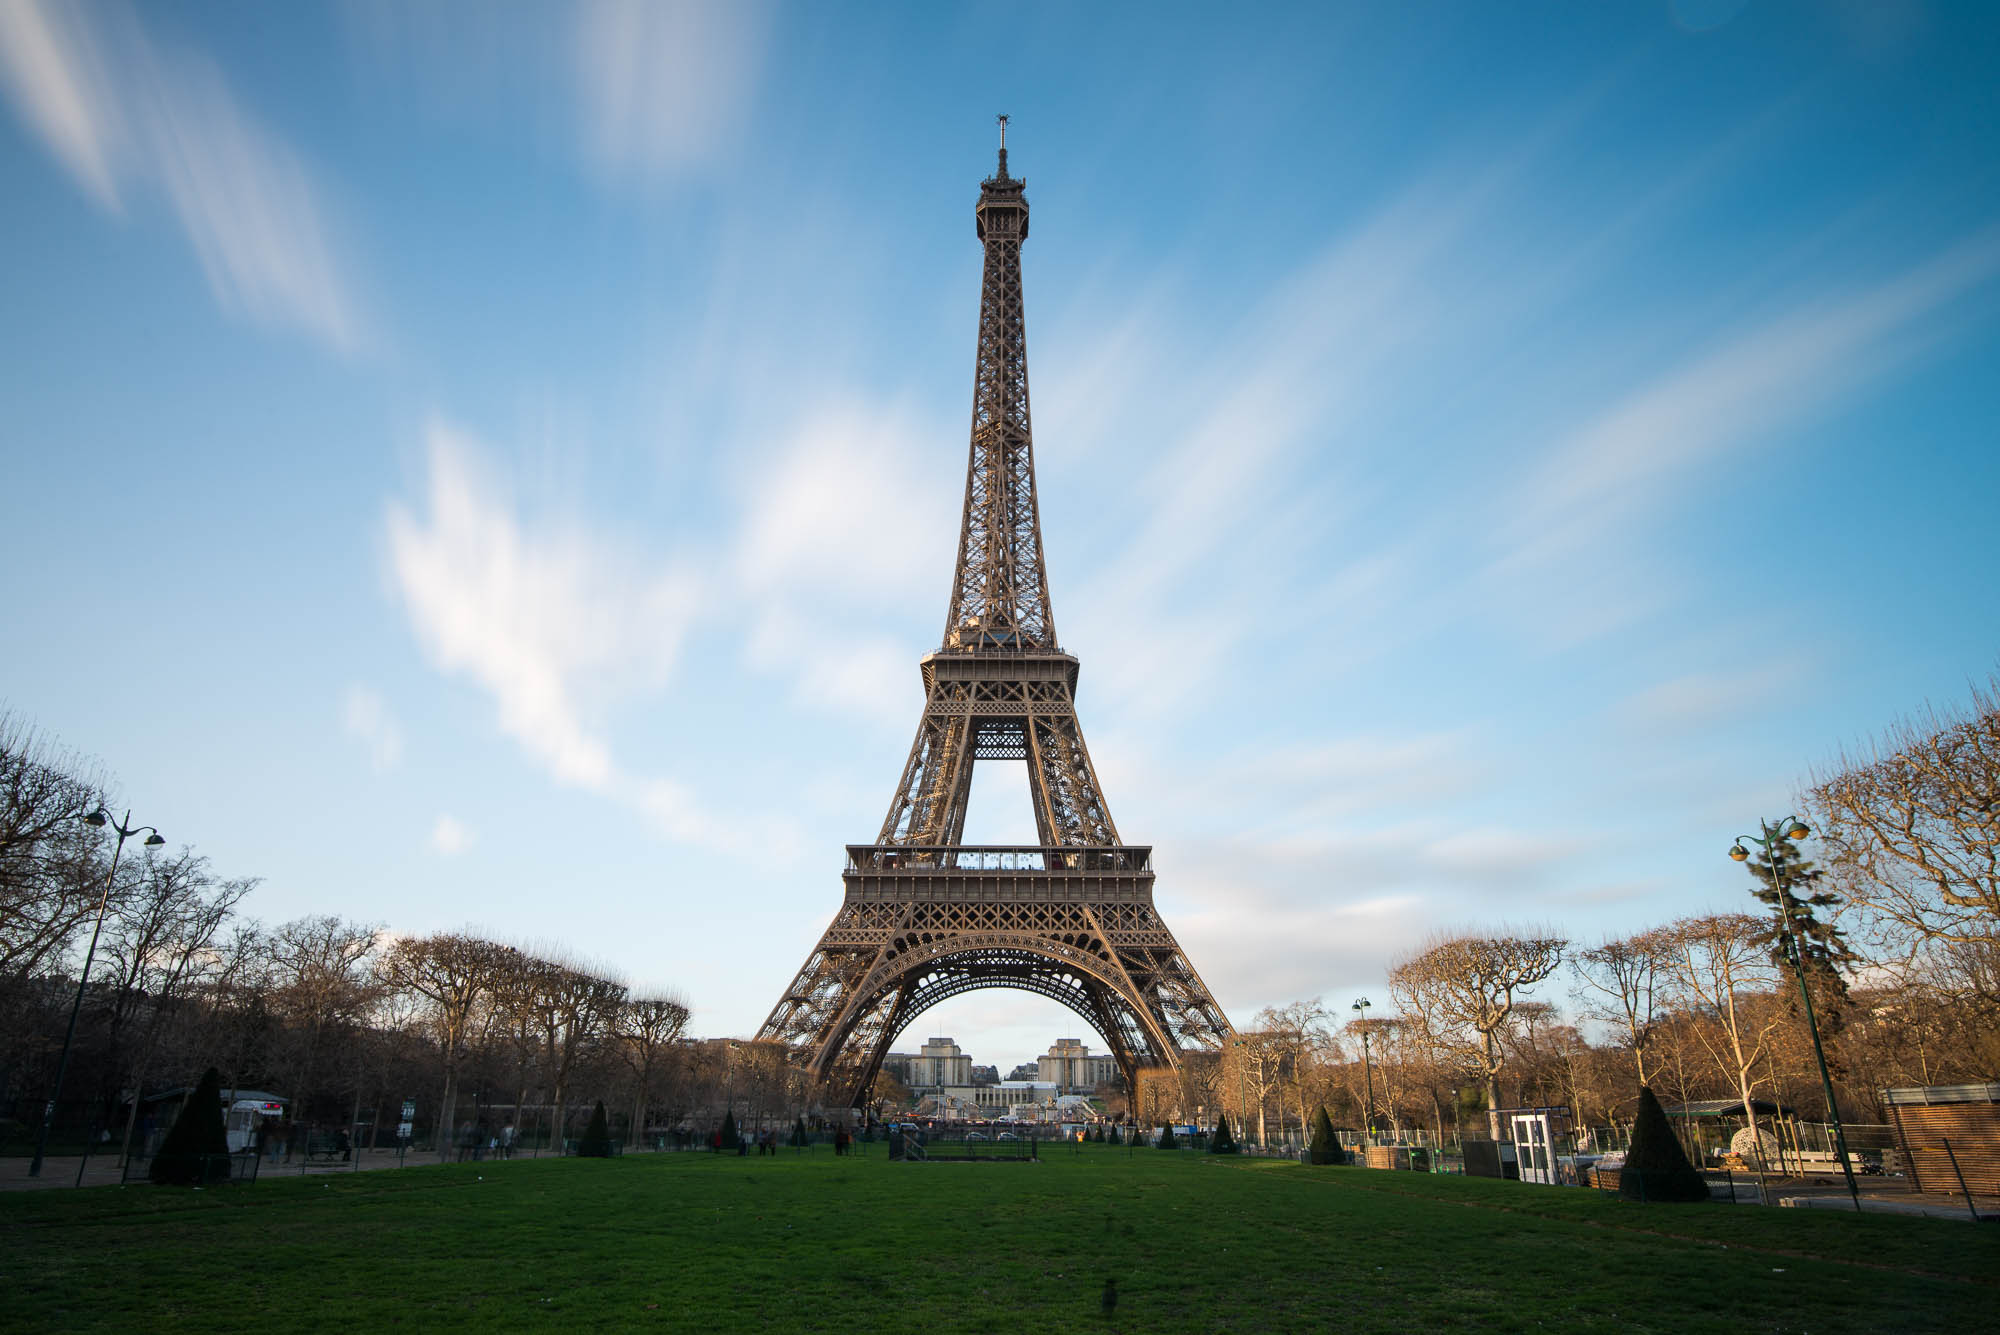 Tour Eiffel - filtre Nisi AR ND 1000 - 21mm, 30s, f/11, ISO 100 - © Damien Roué